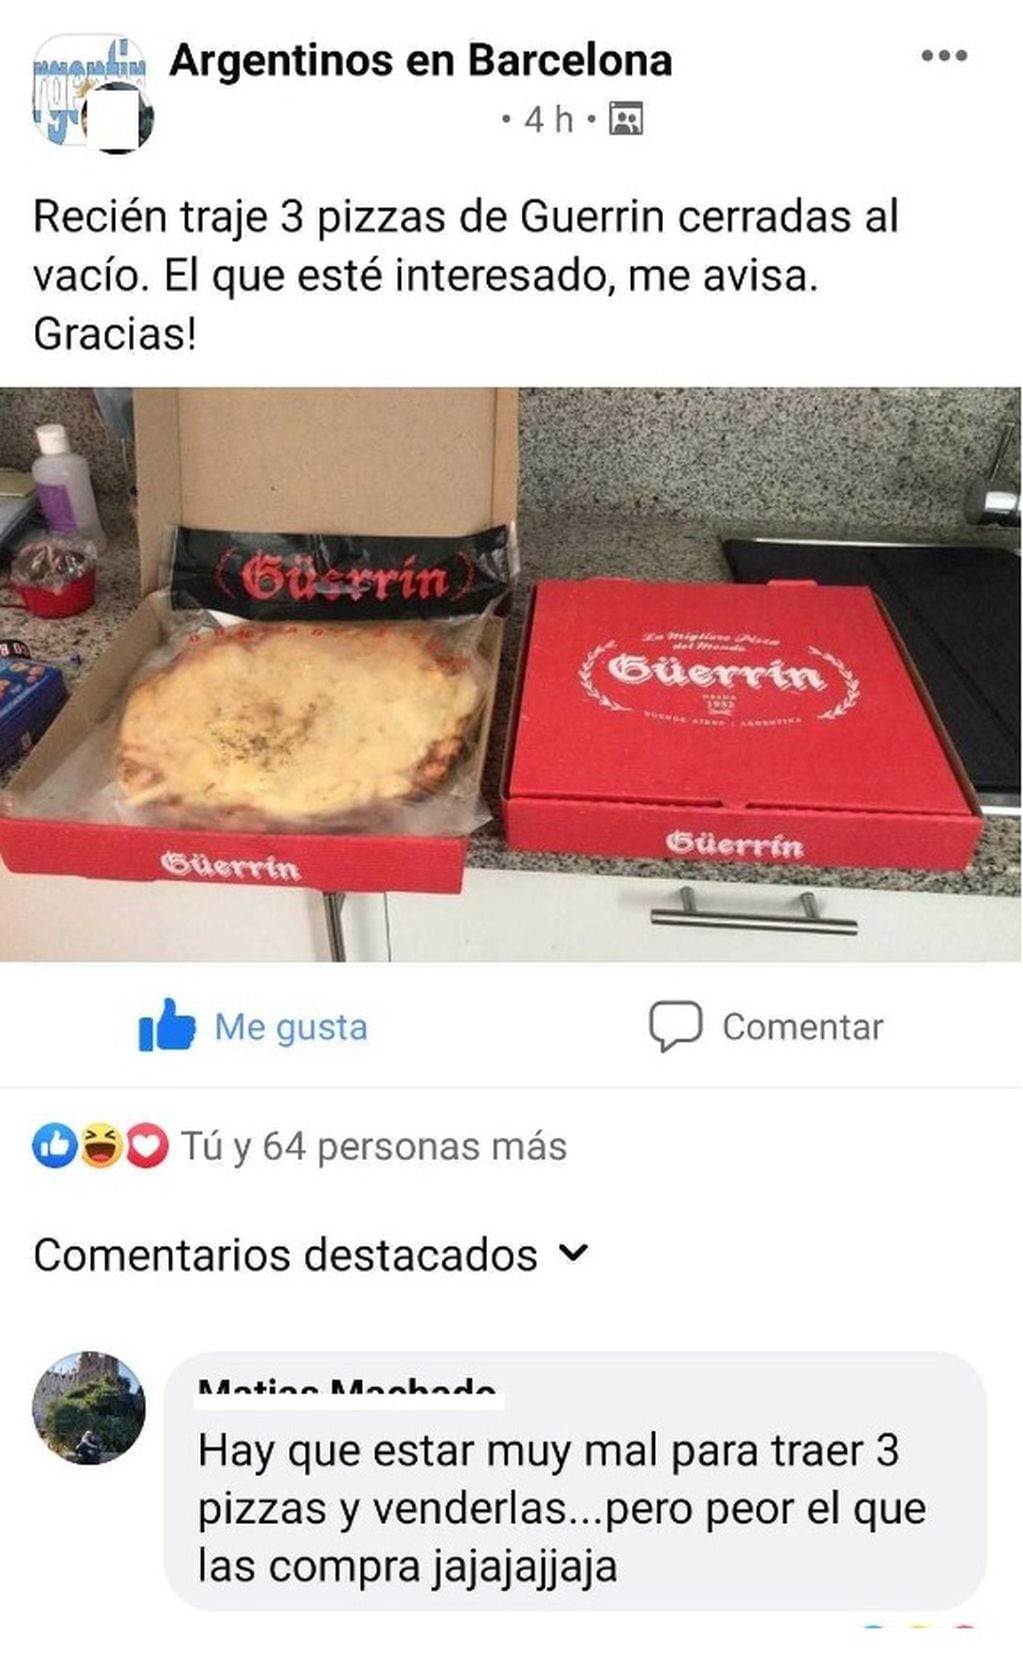 Una usuaria se llevó pizzas selladas al vacío de Guerrin y las vende a 20 euros cada una